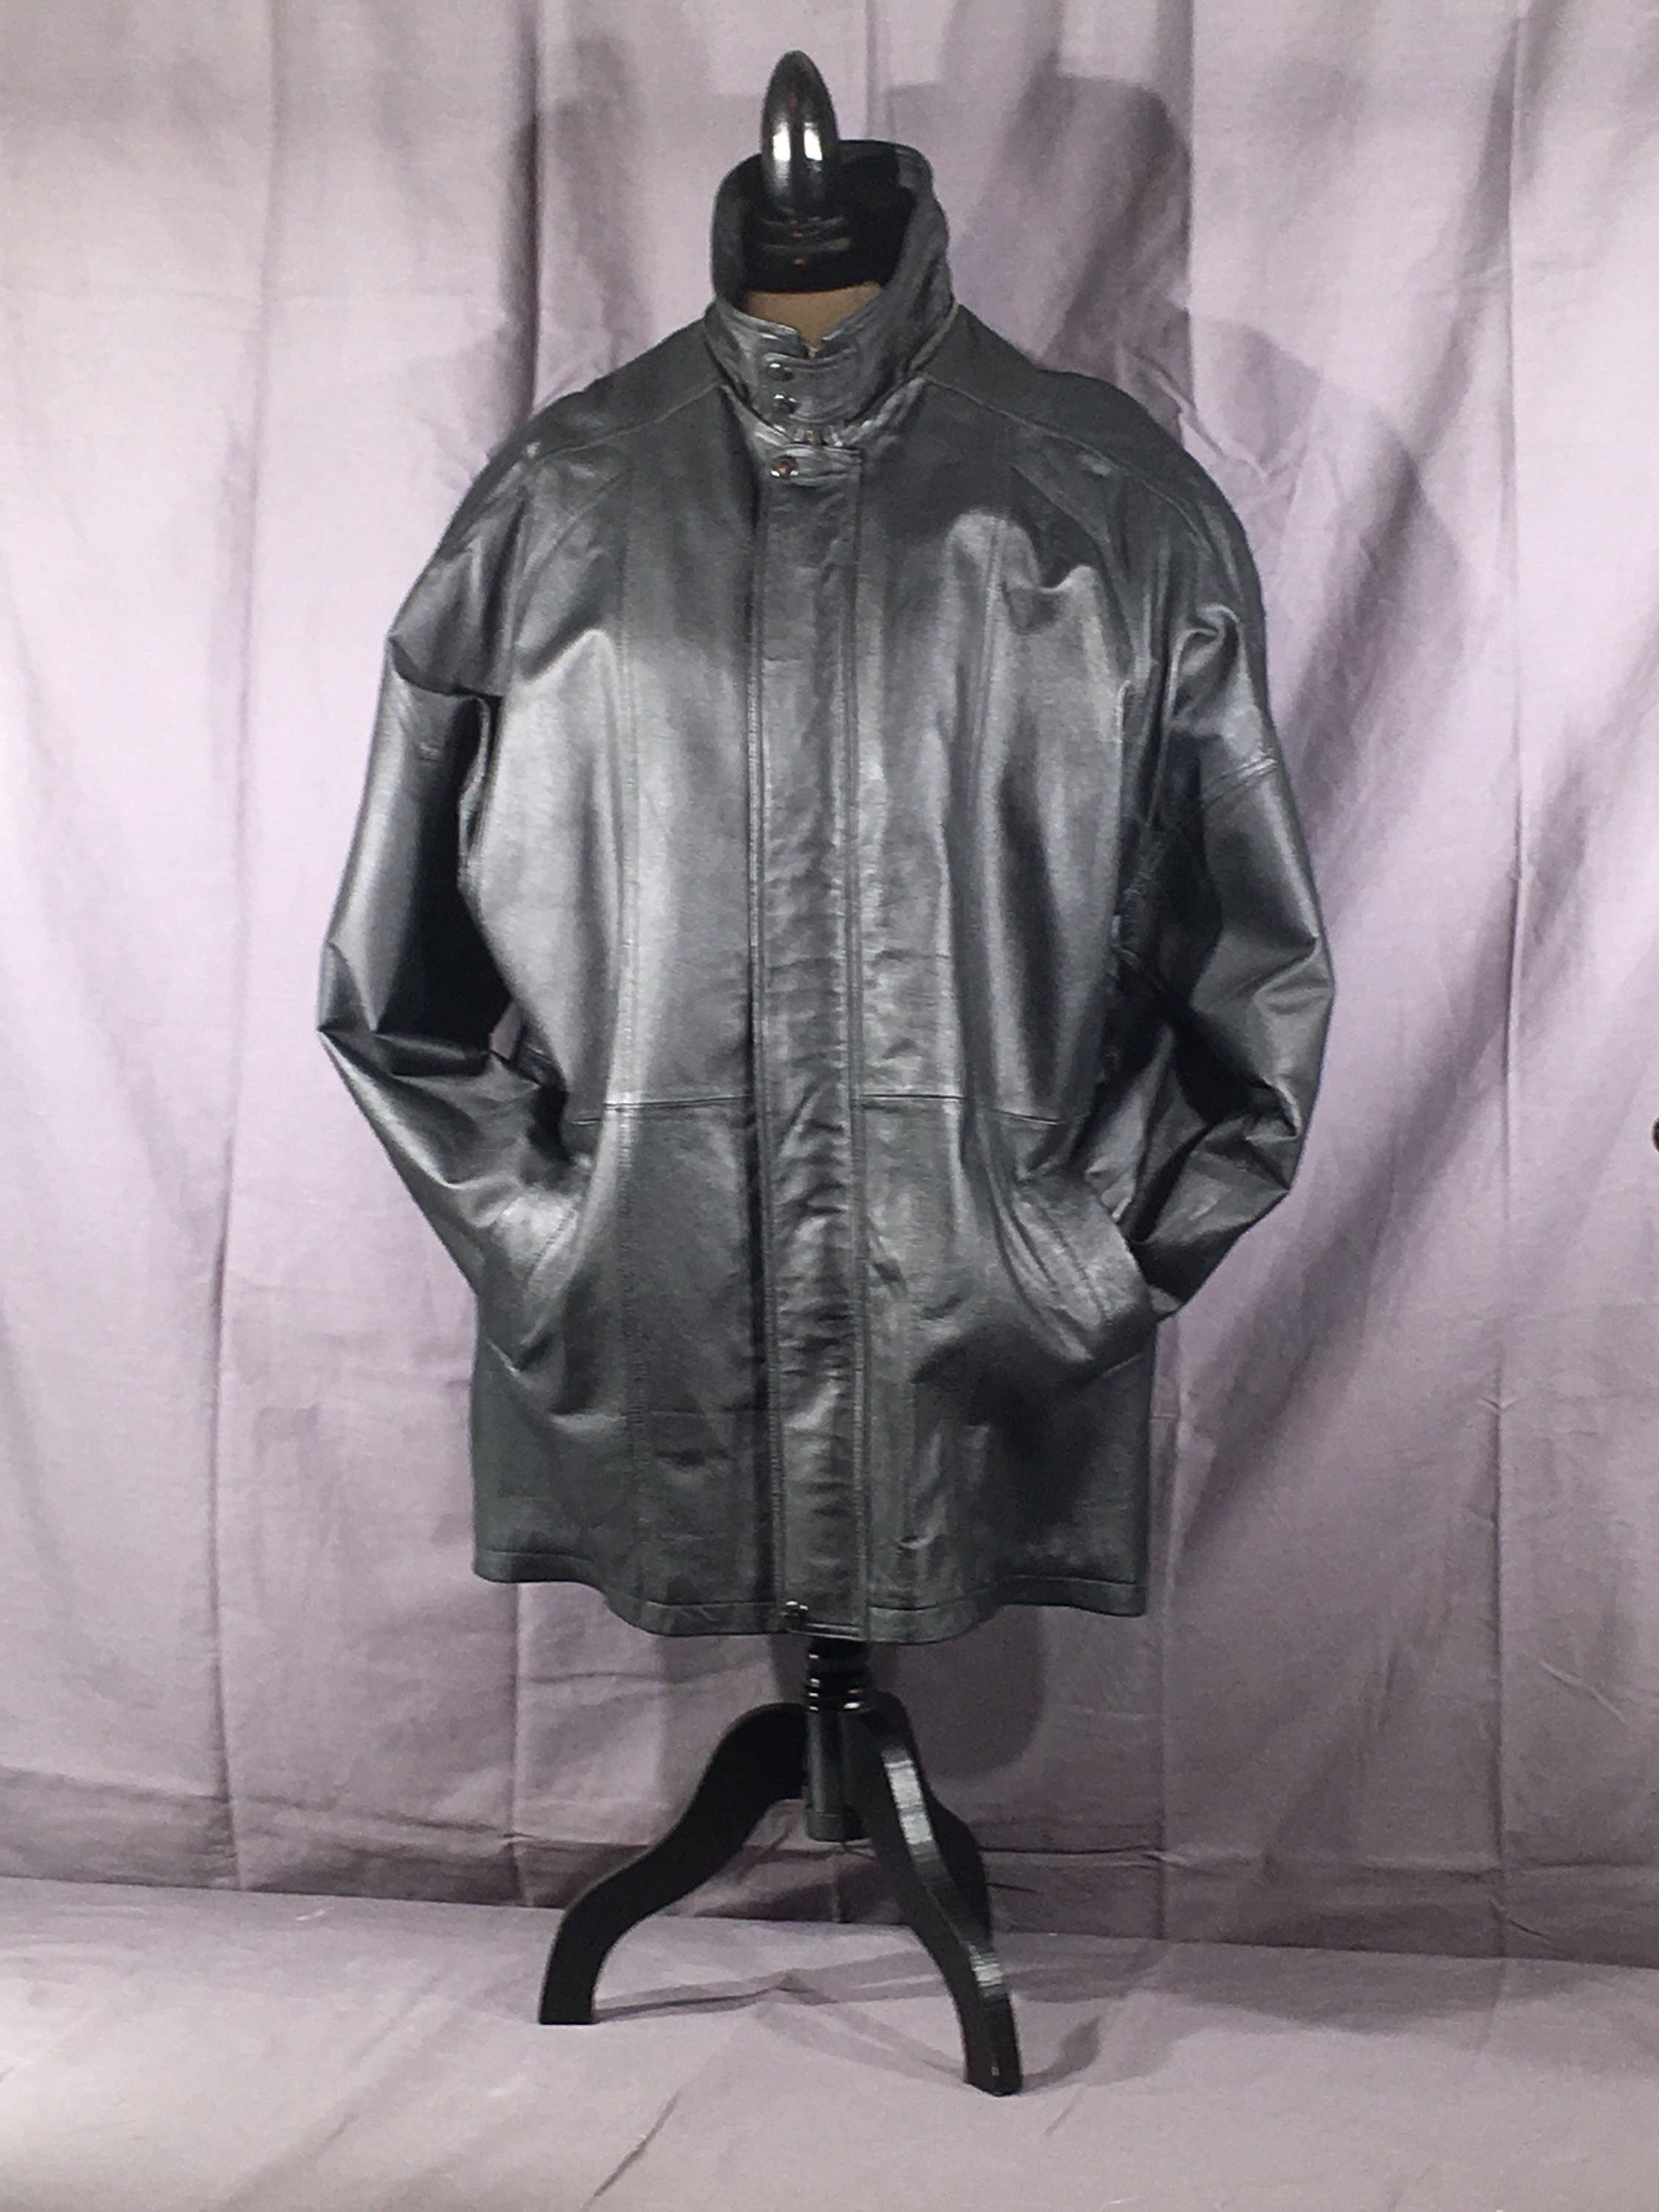 Vintage Black Leather Coat, Phase 2 Black Leather Winter Coat, Retro ...